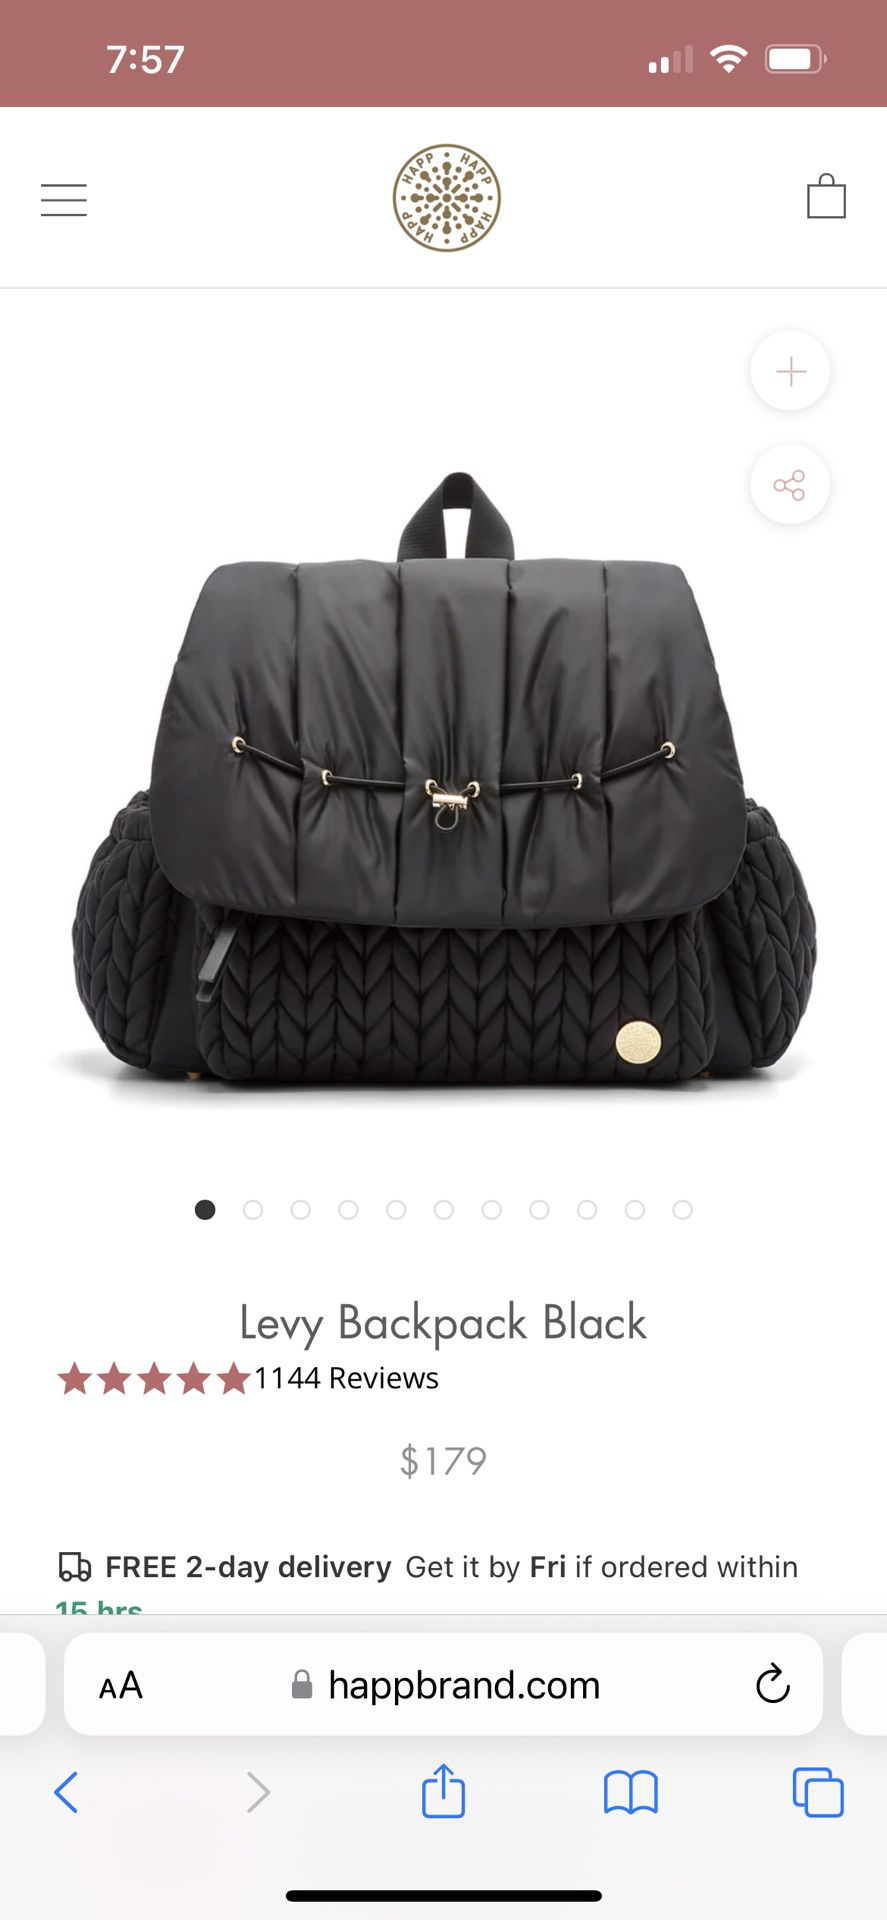 Happ Brand - Levy Backpack Diaper Bag